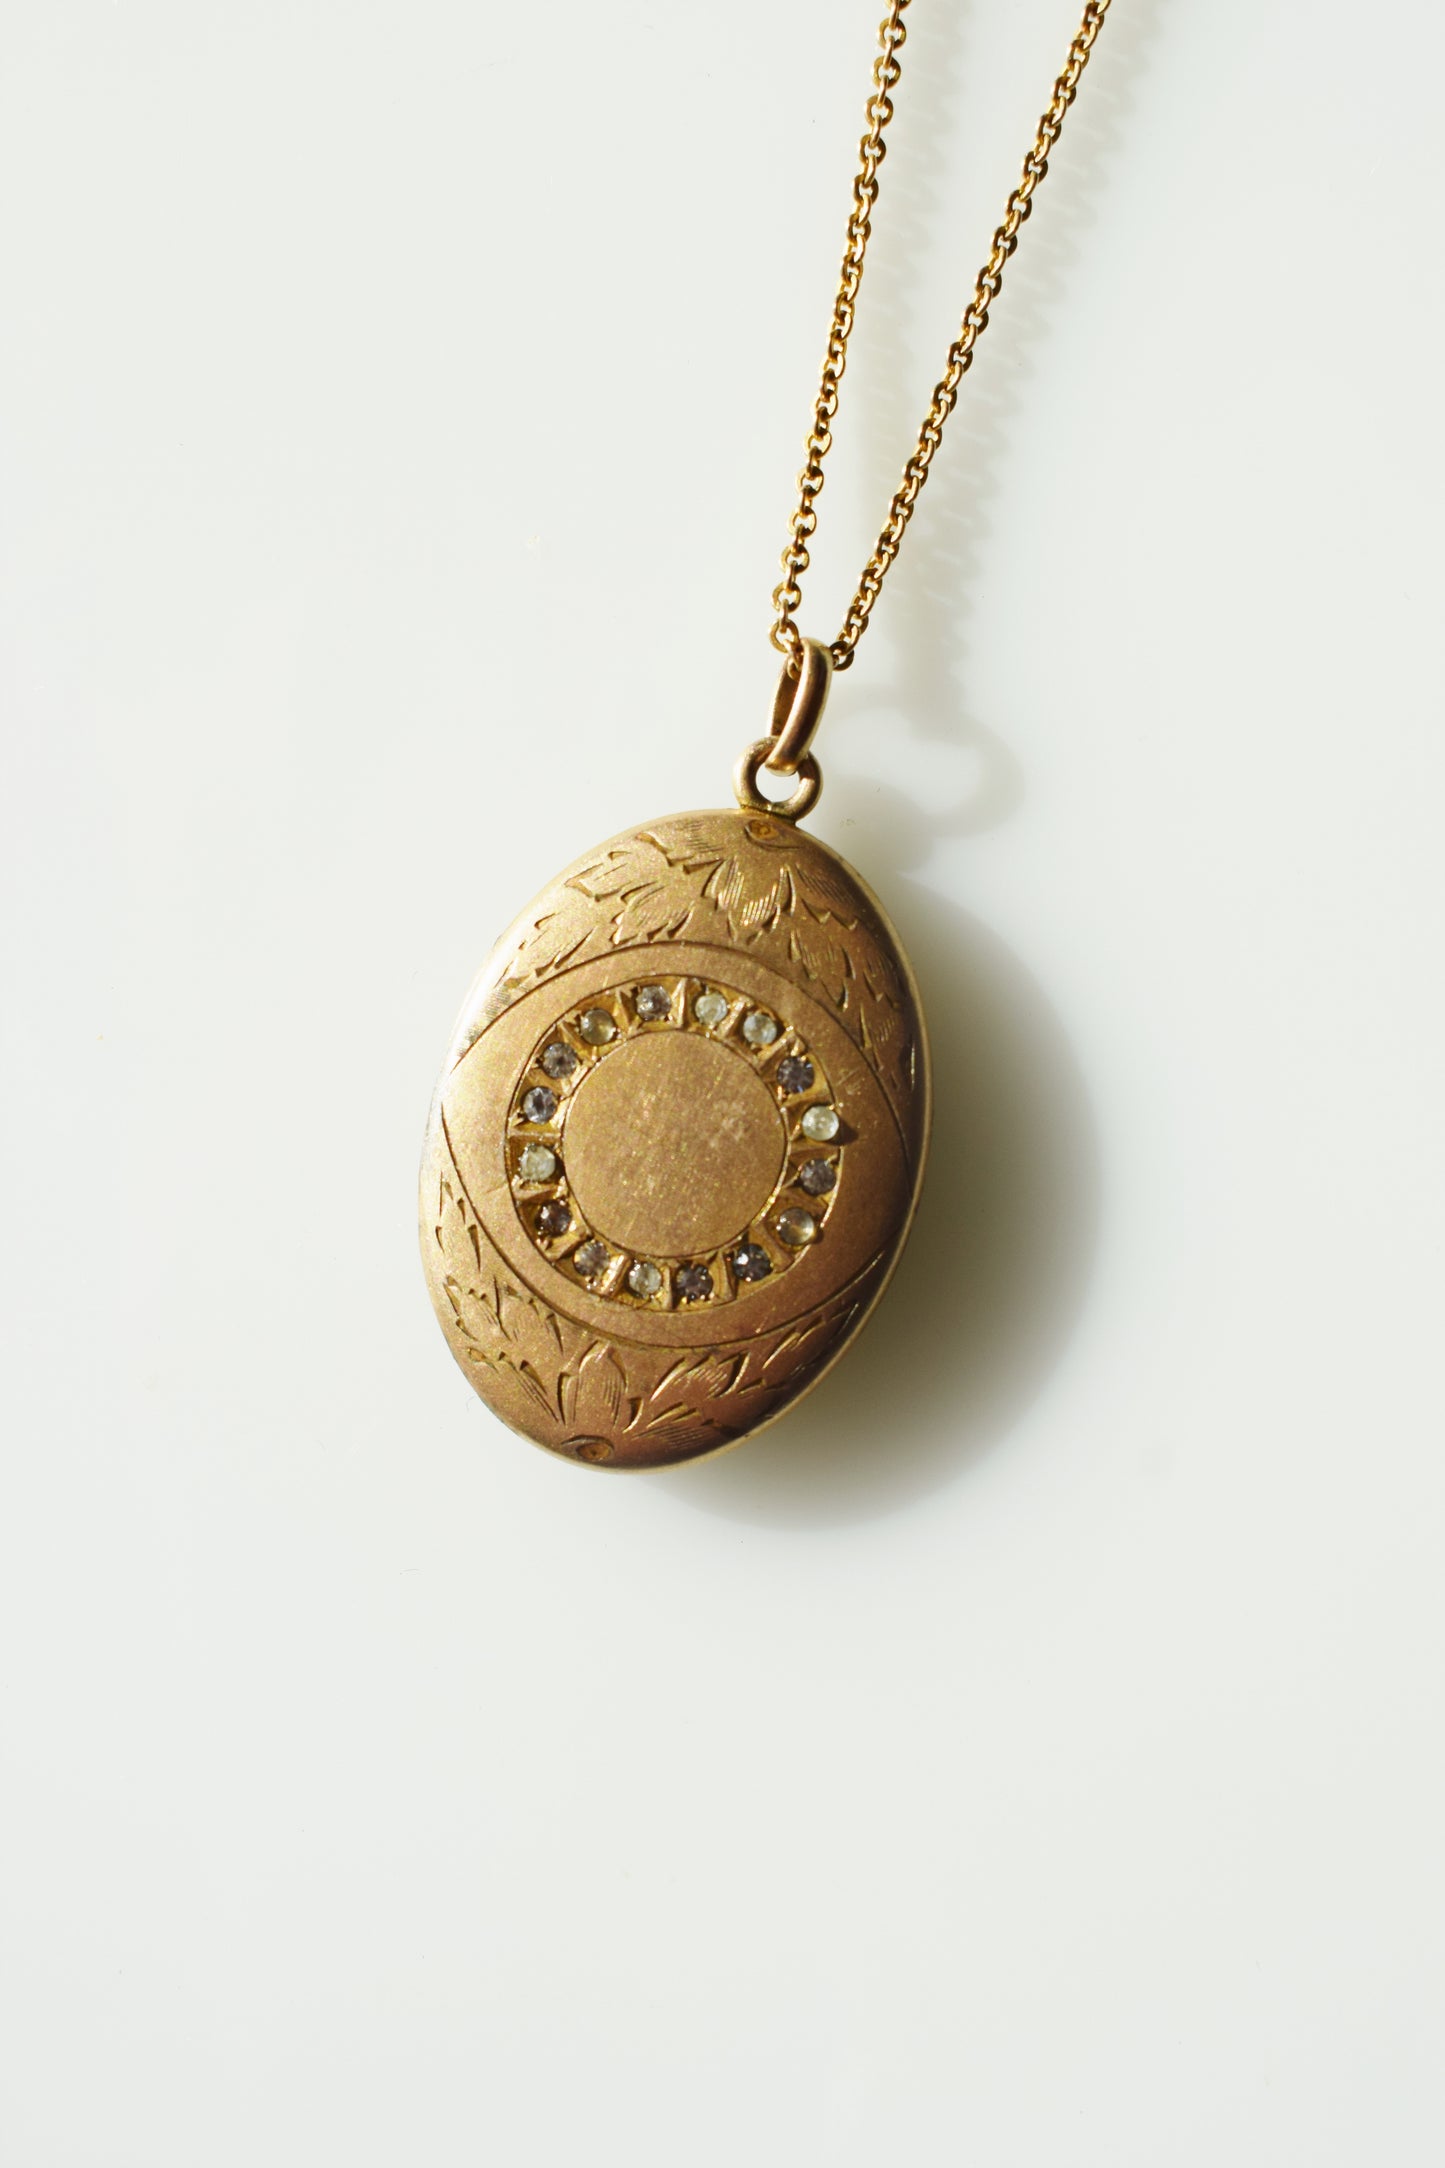 Antique Rhinestone Eye Locket | "MAR" initials